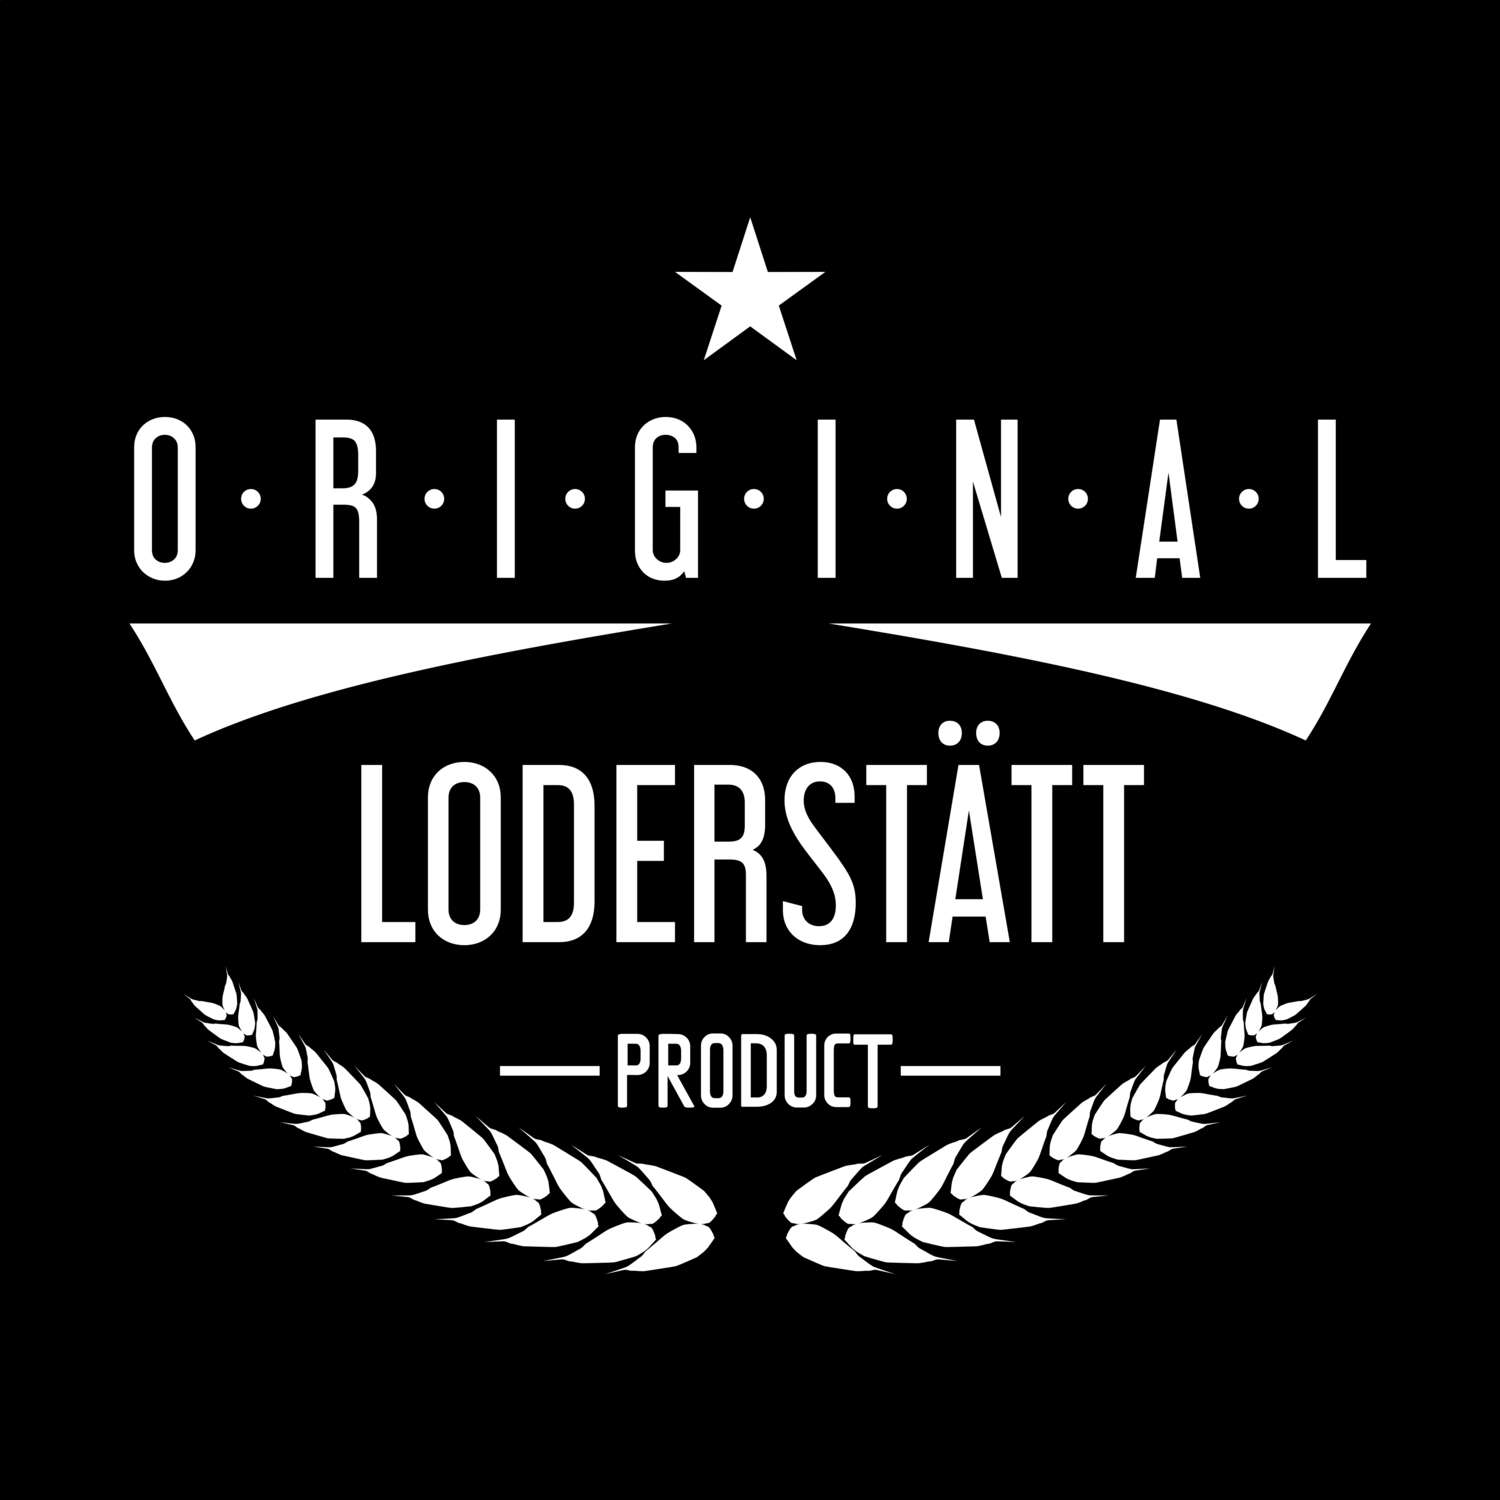 Loderstätt T-Shirt »Original Product«